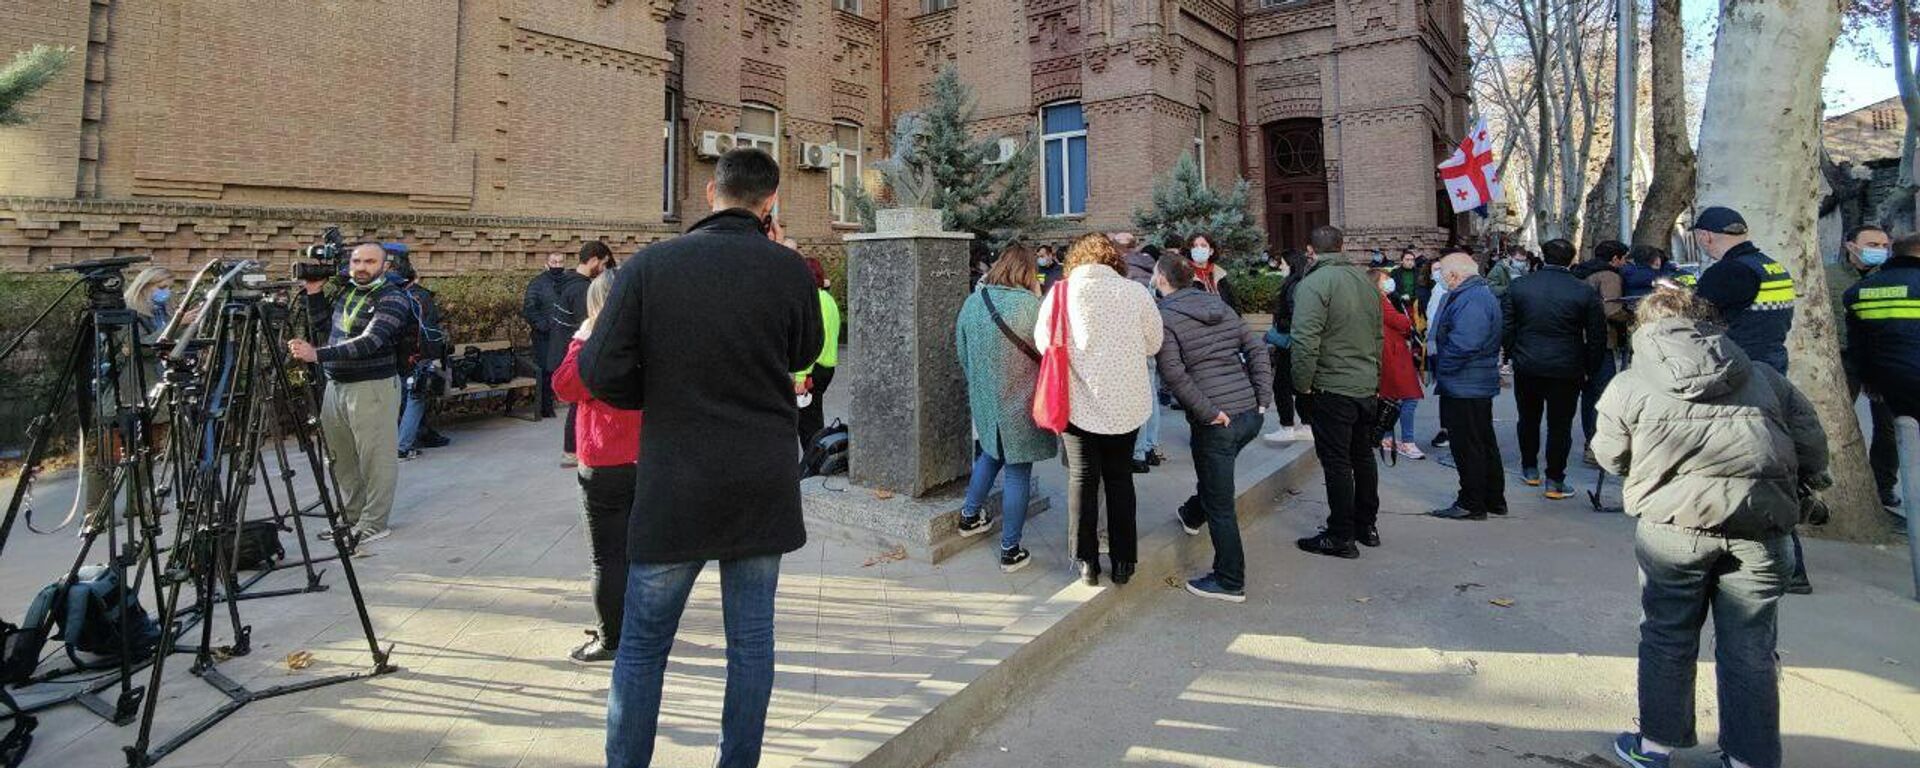 Акция протеста оппозиции у здания Министерства образования Грузии 6 декабря 2021 года - Sputnik Грузия, 1920, 06.12.2021